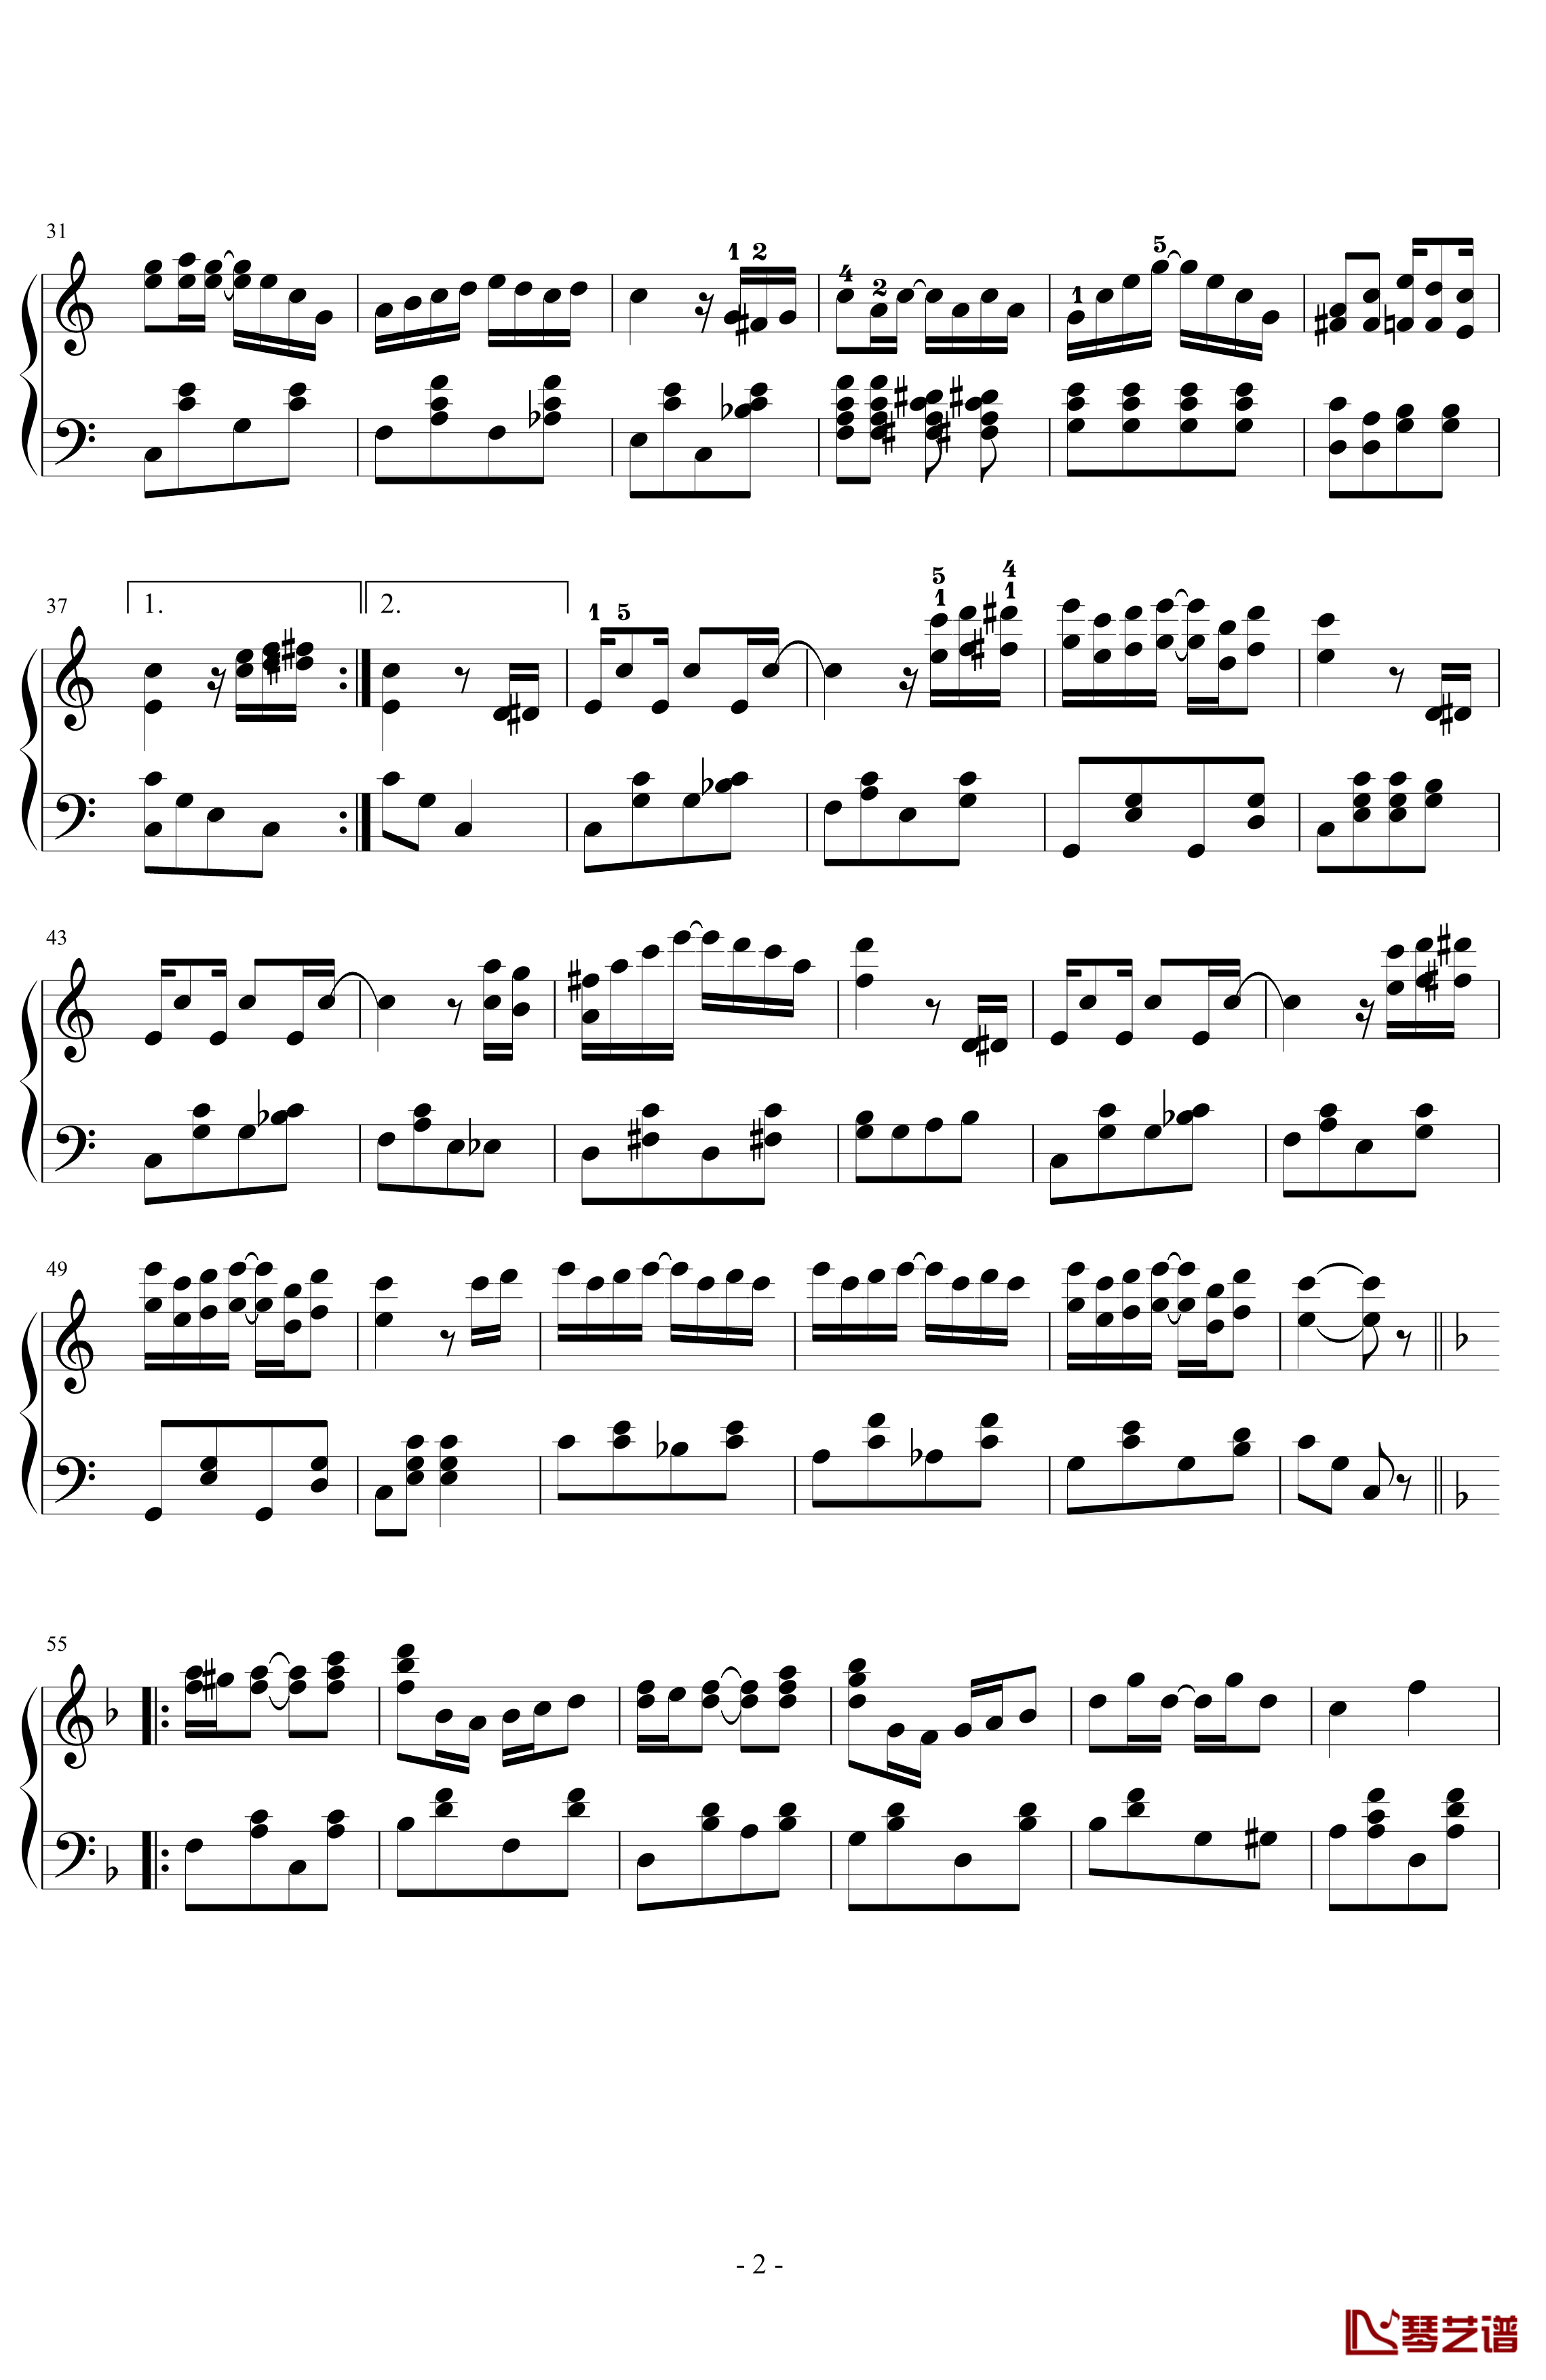 演艺人钢琴谱-简化版-乔普林2